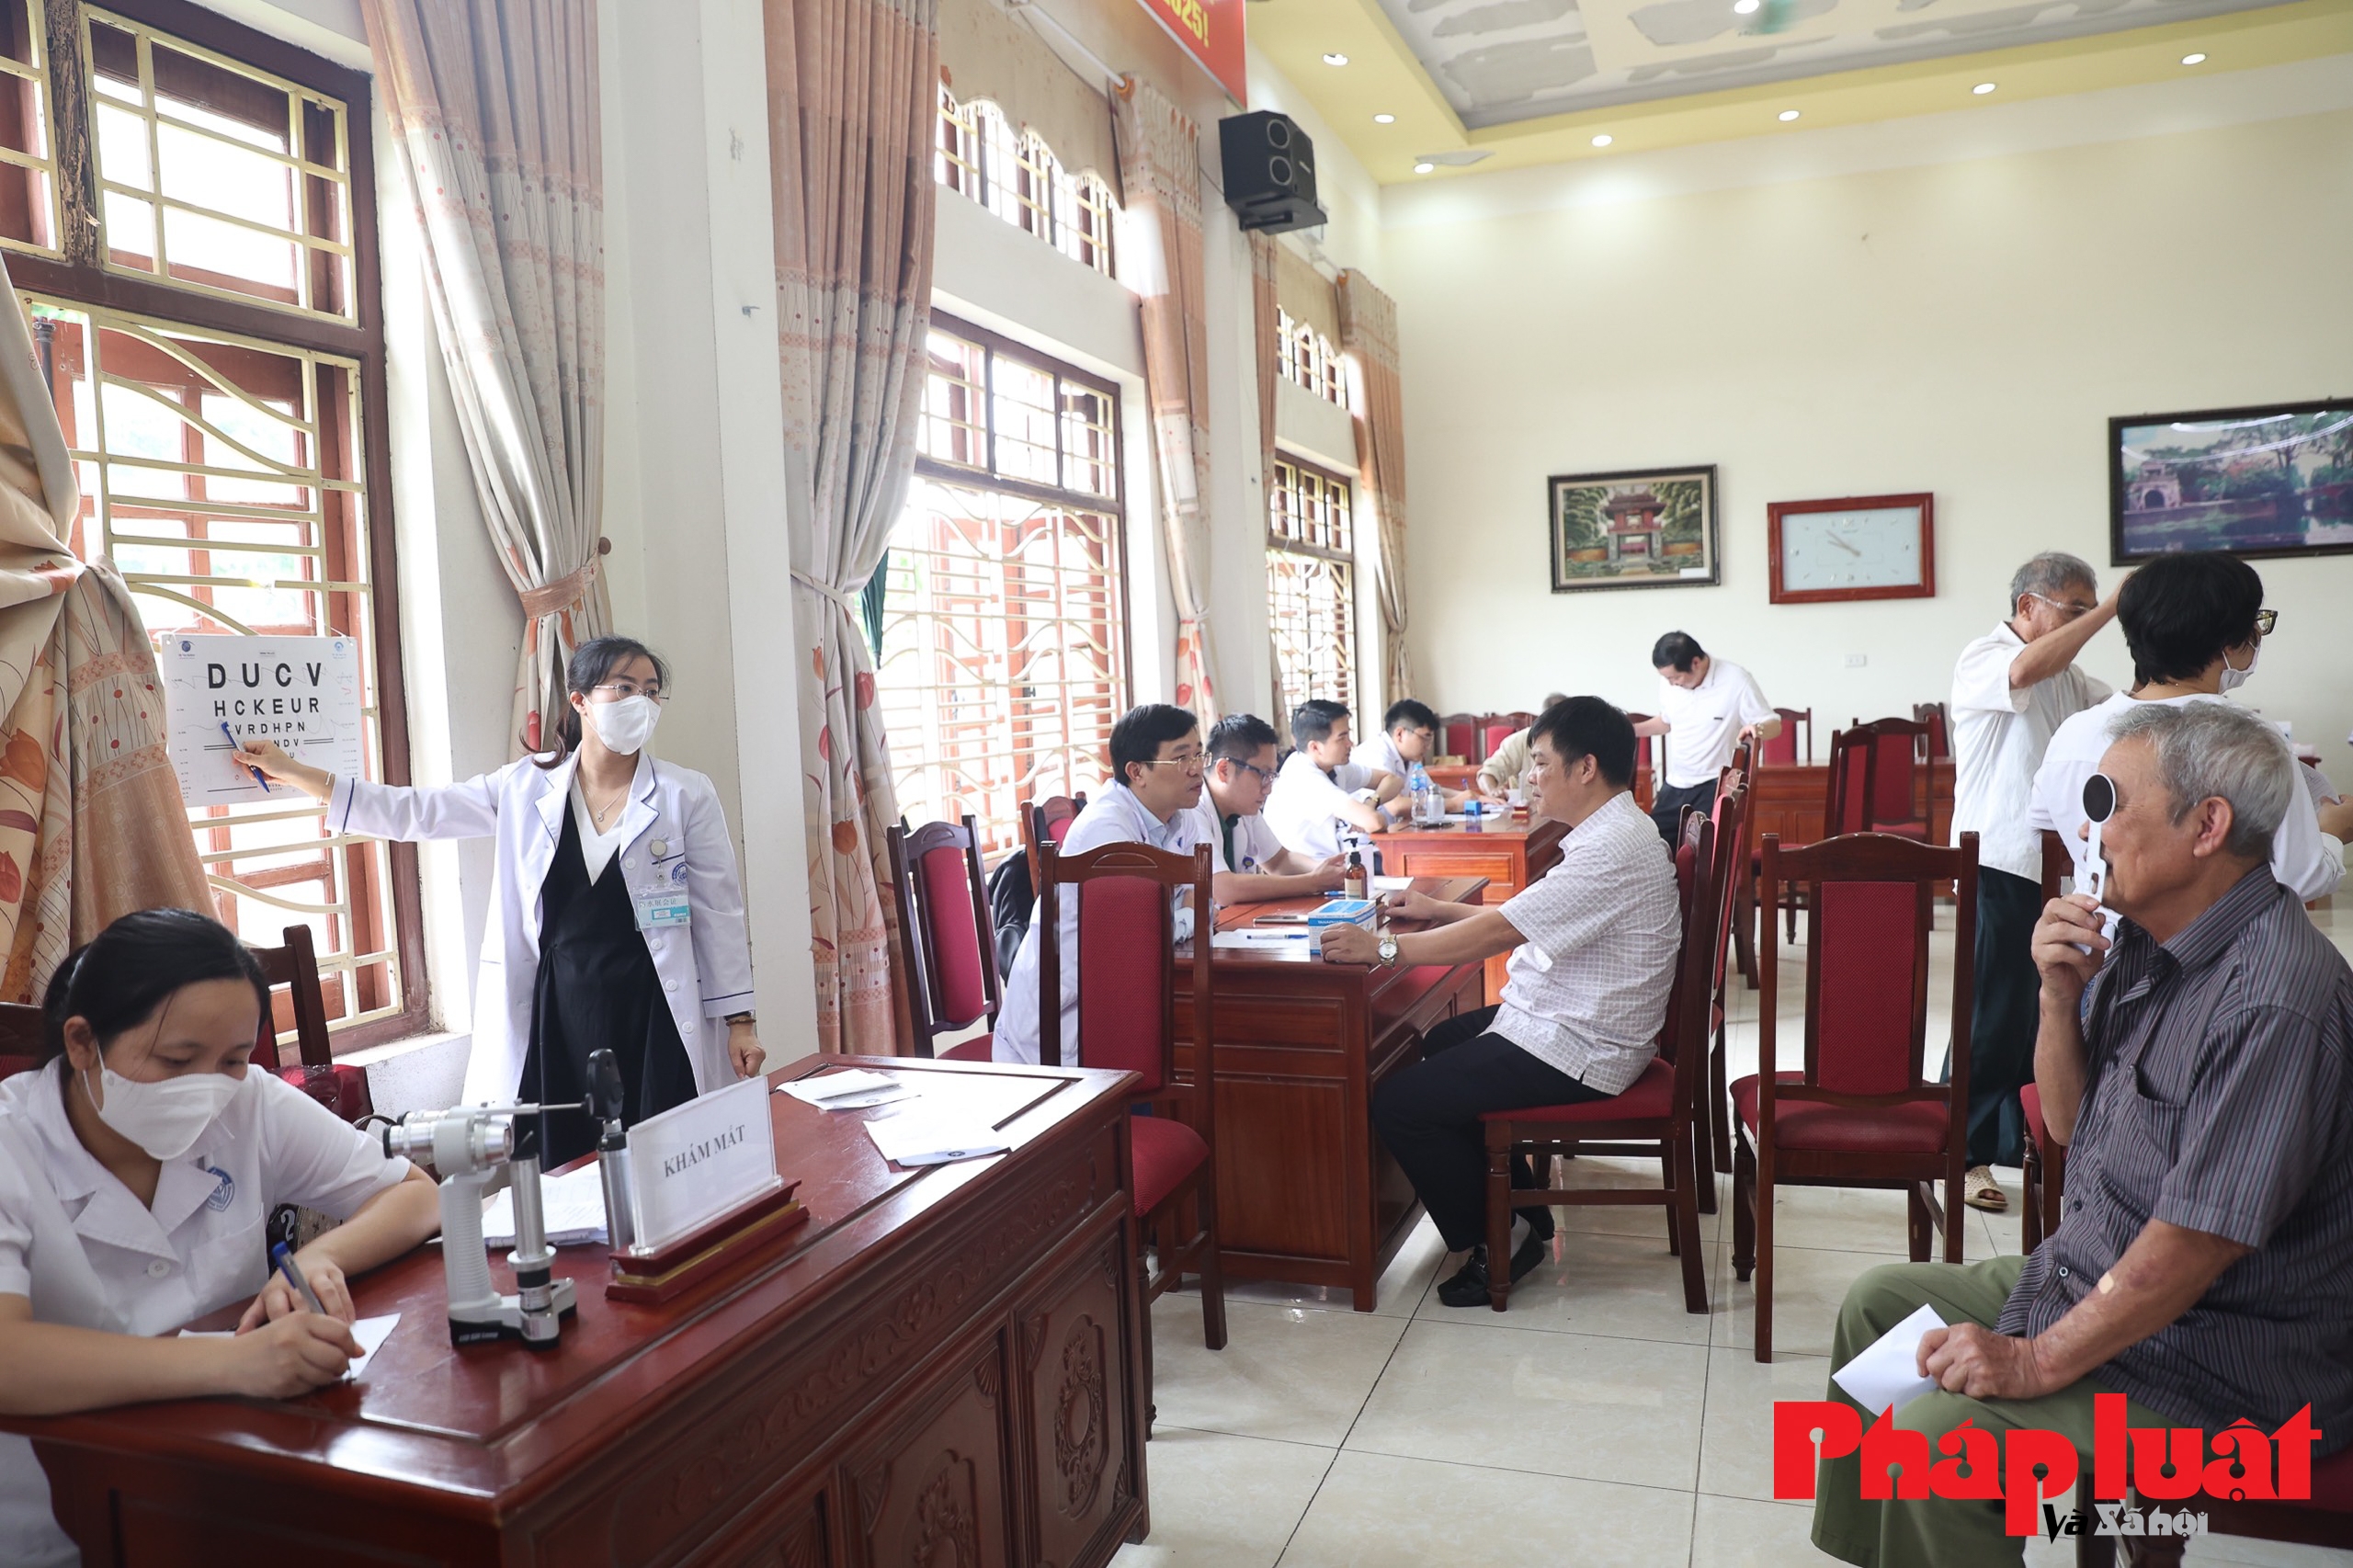 Khám sức khoẻ và cấp phát thuốc miễn phí cho người dân xã đảo duy nhất tại Hà Nội